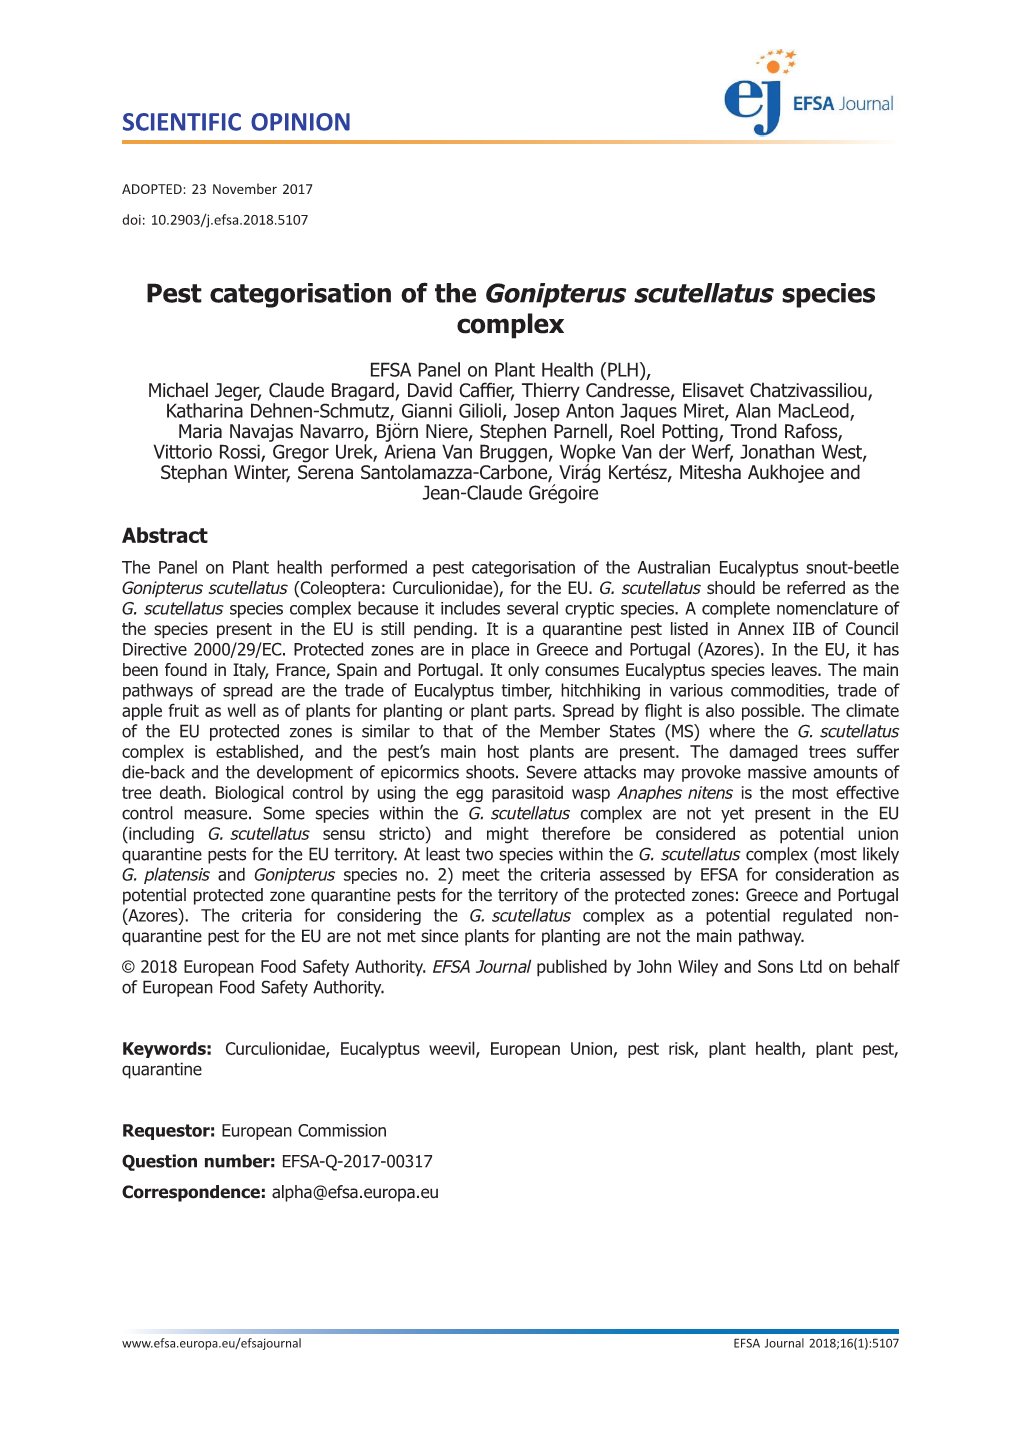 Pest Categorisation of the Gonipterus Scutellatus Species Complex